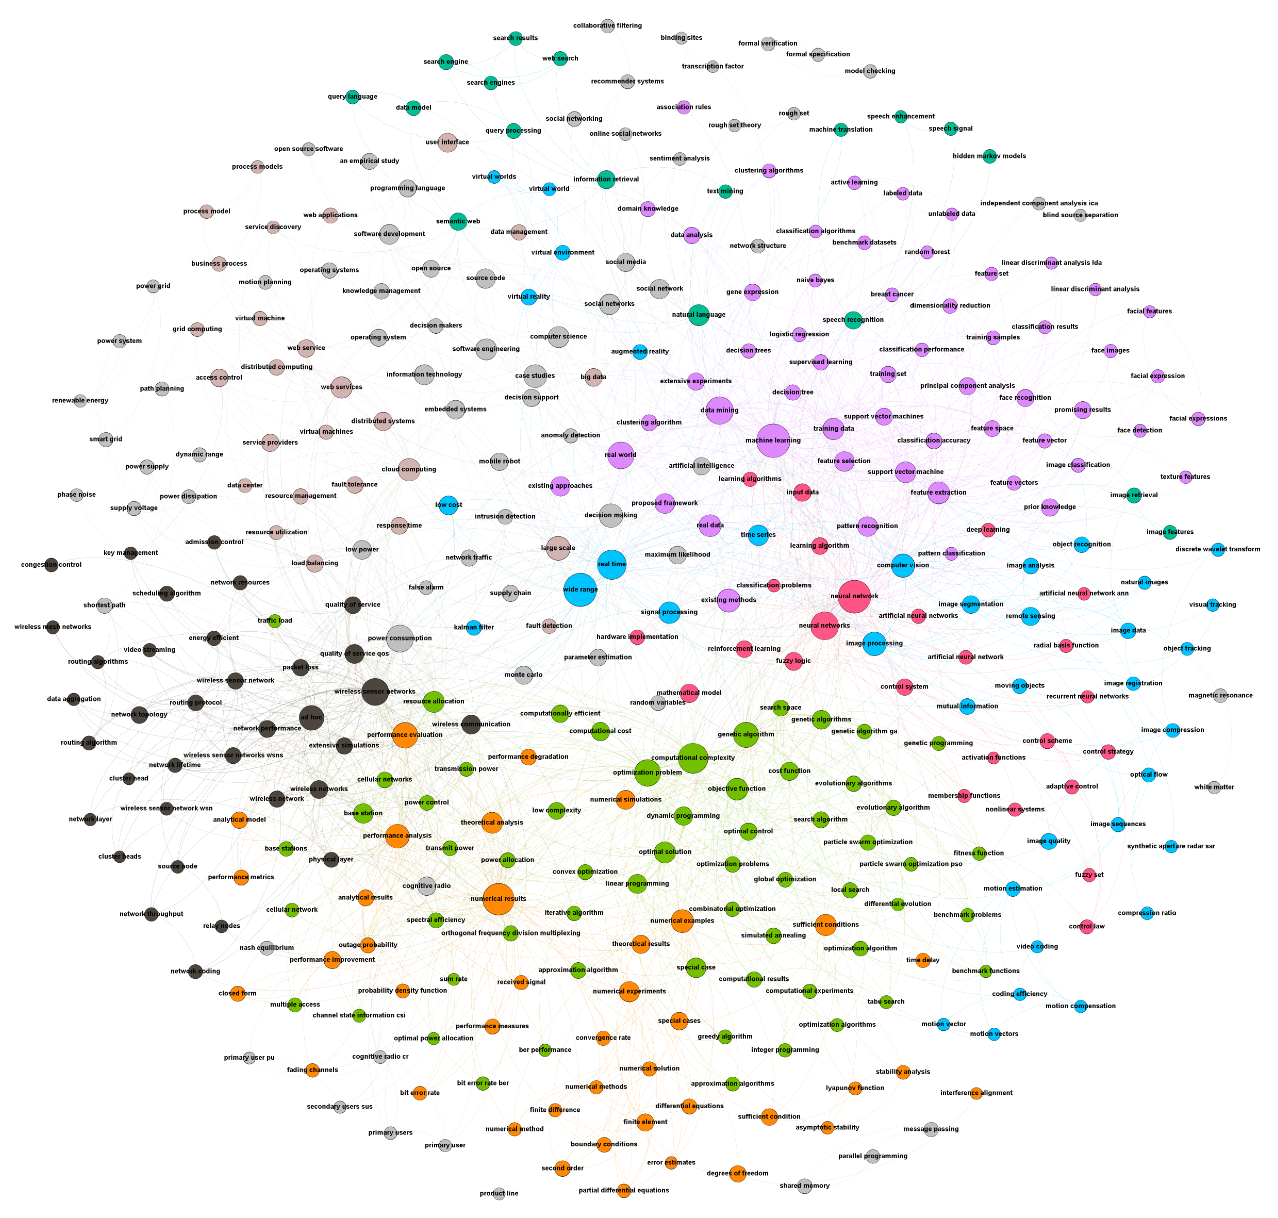 Network visualization